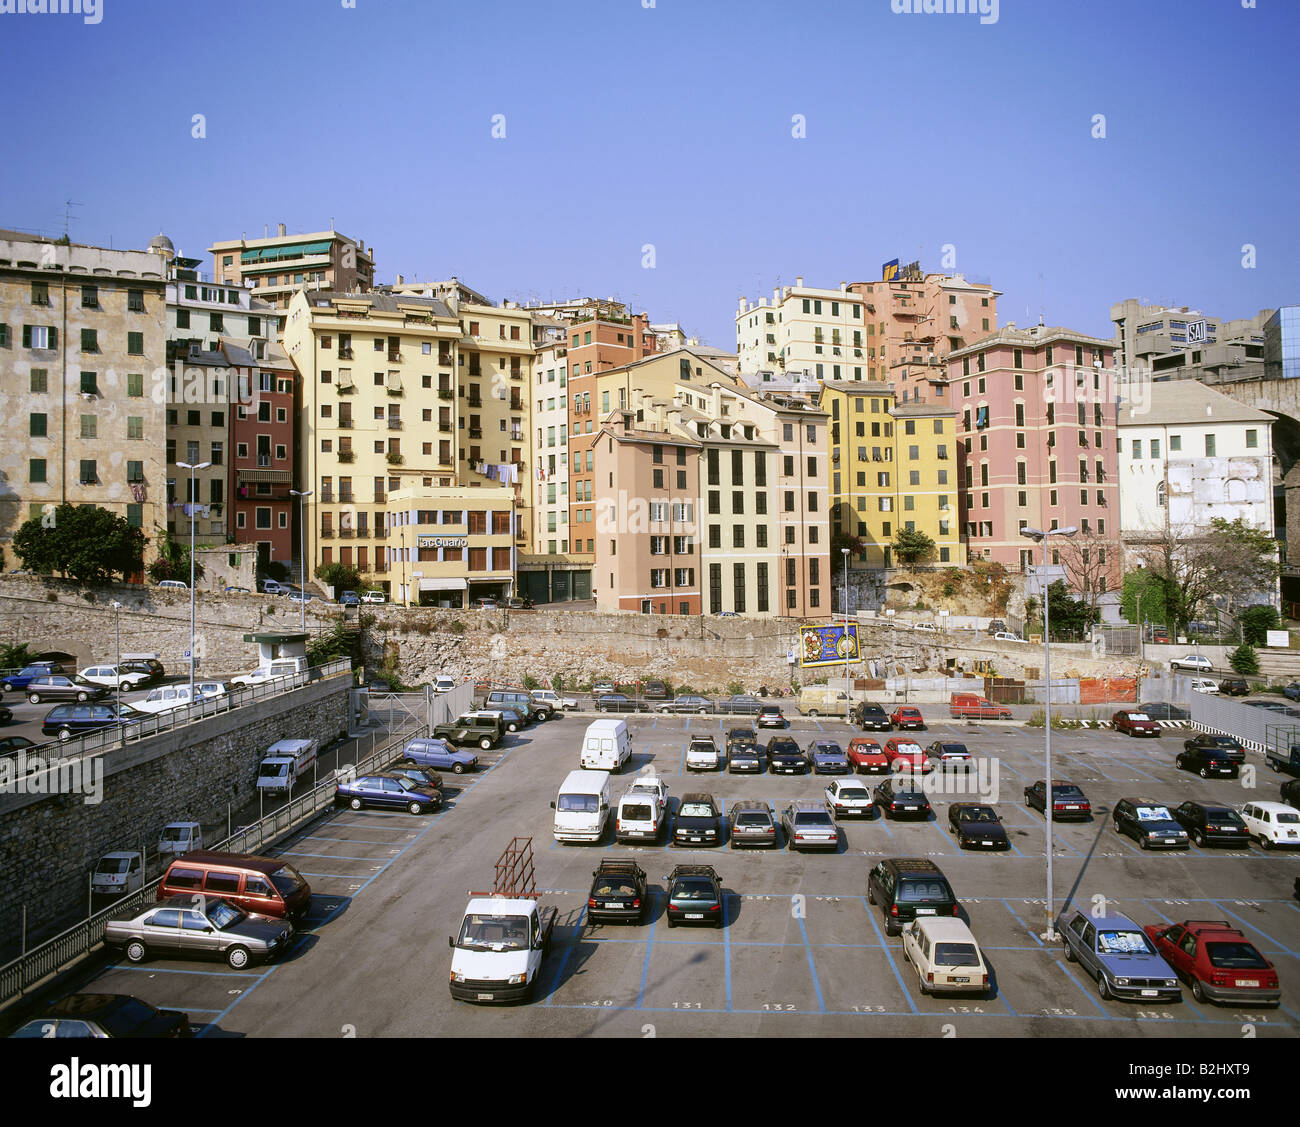 geography / travel, Italy, Sarzano, city view, cityscape, car park, Stock Photo